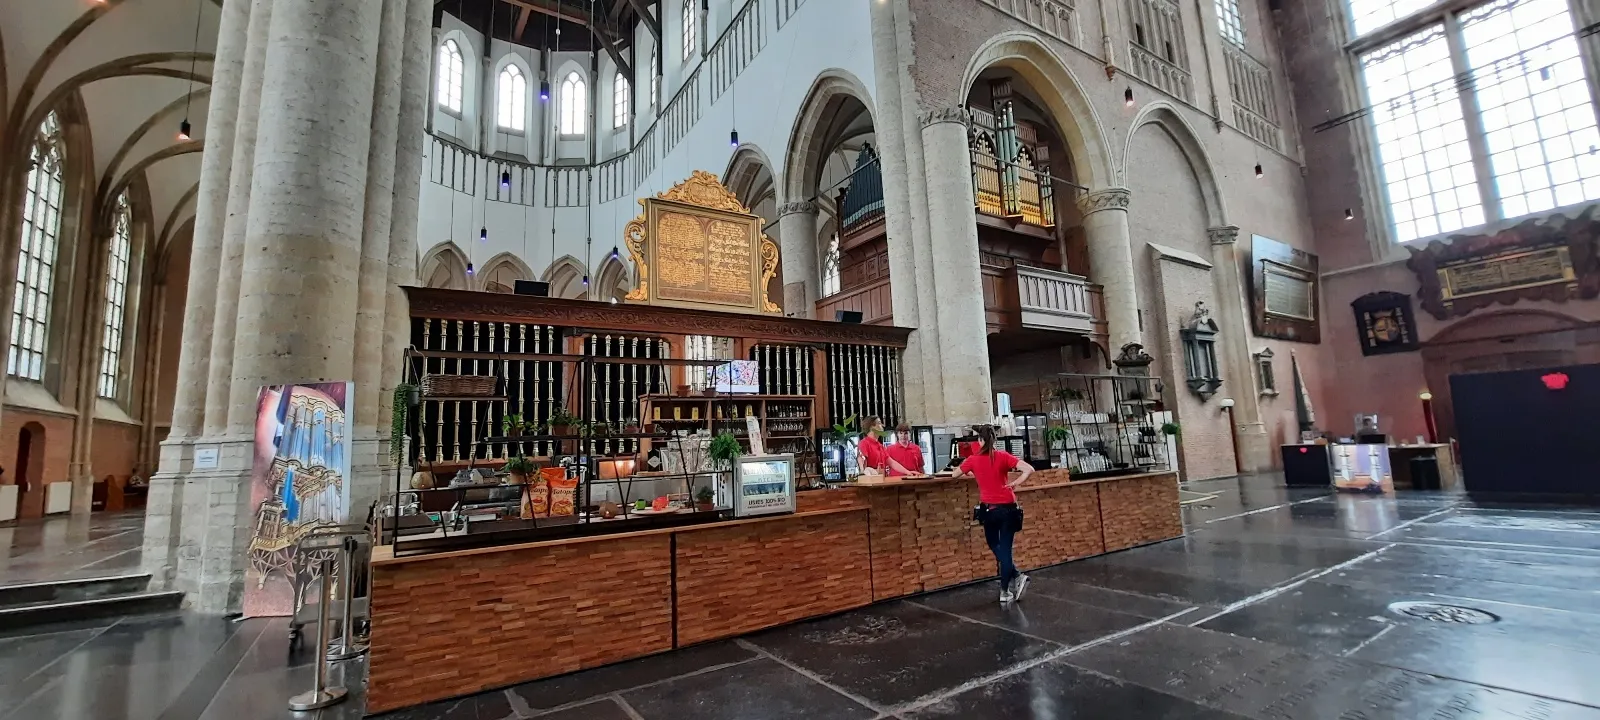 Le café dans l'église Pieterskerk à Leyde, Hollande-Méridionale © Daniel Desjardins